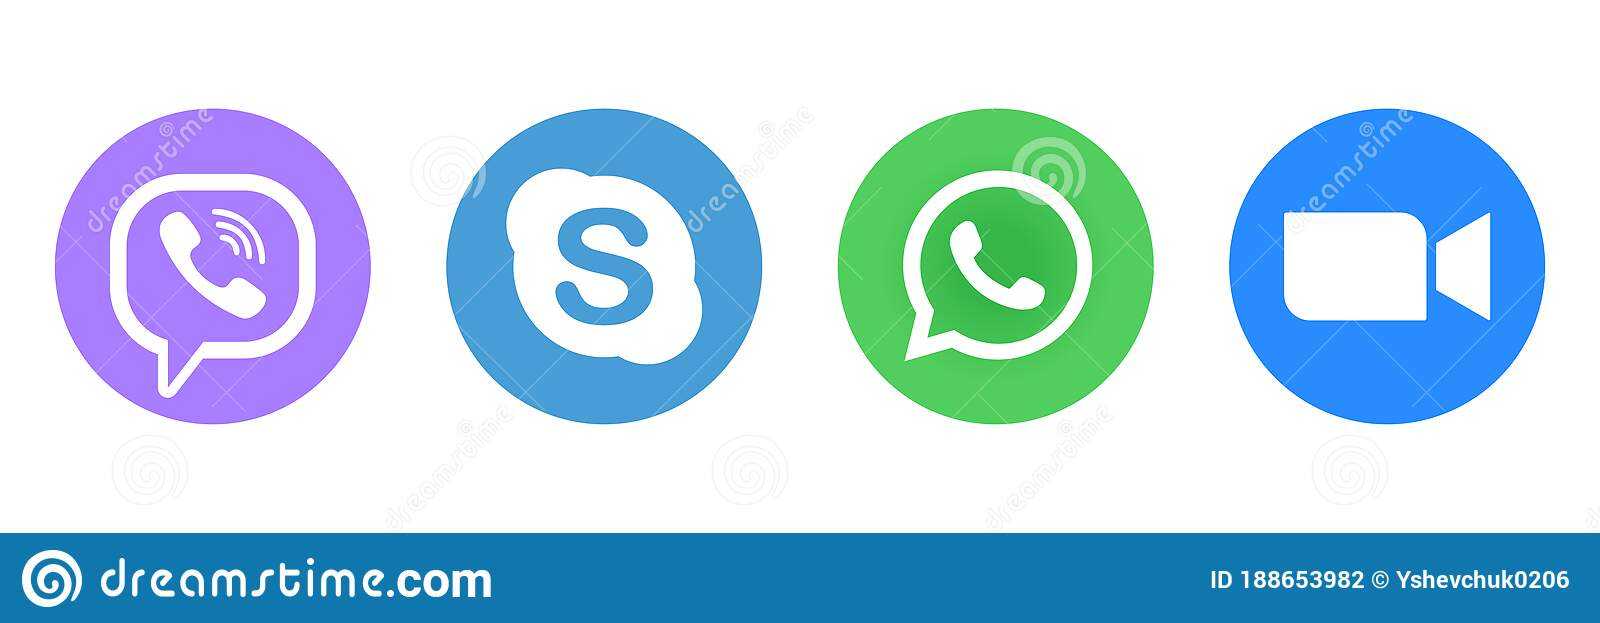 Как поменять фон в whatsapp для чатов и приложения